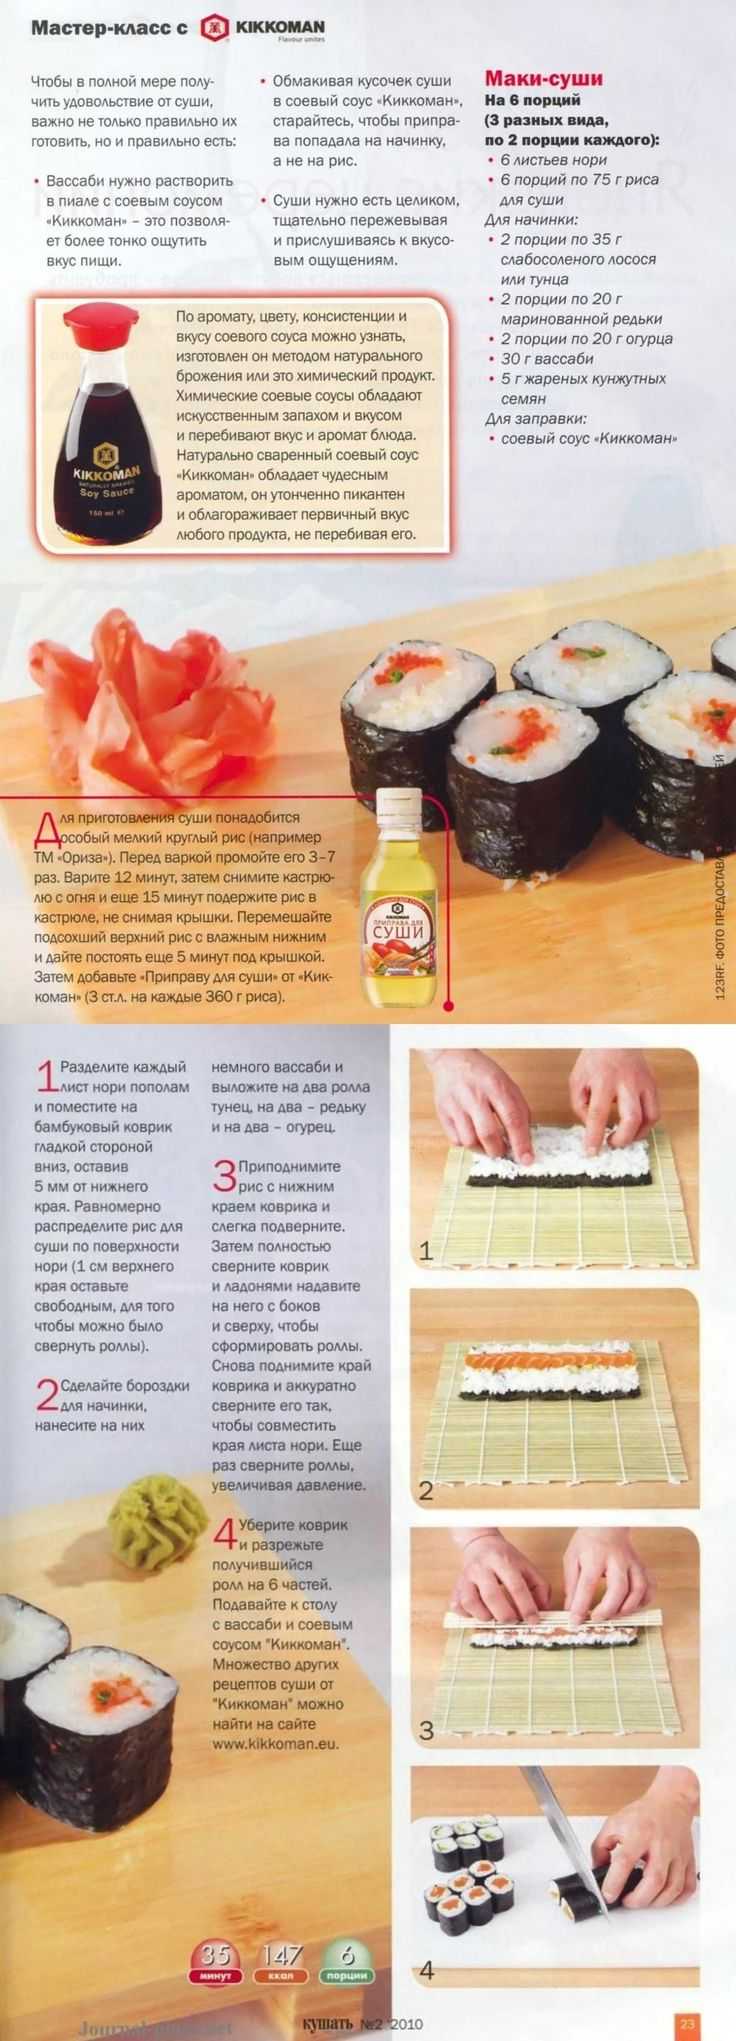 Рецепт суши и роллов запеченных фото 36